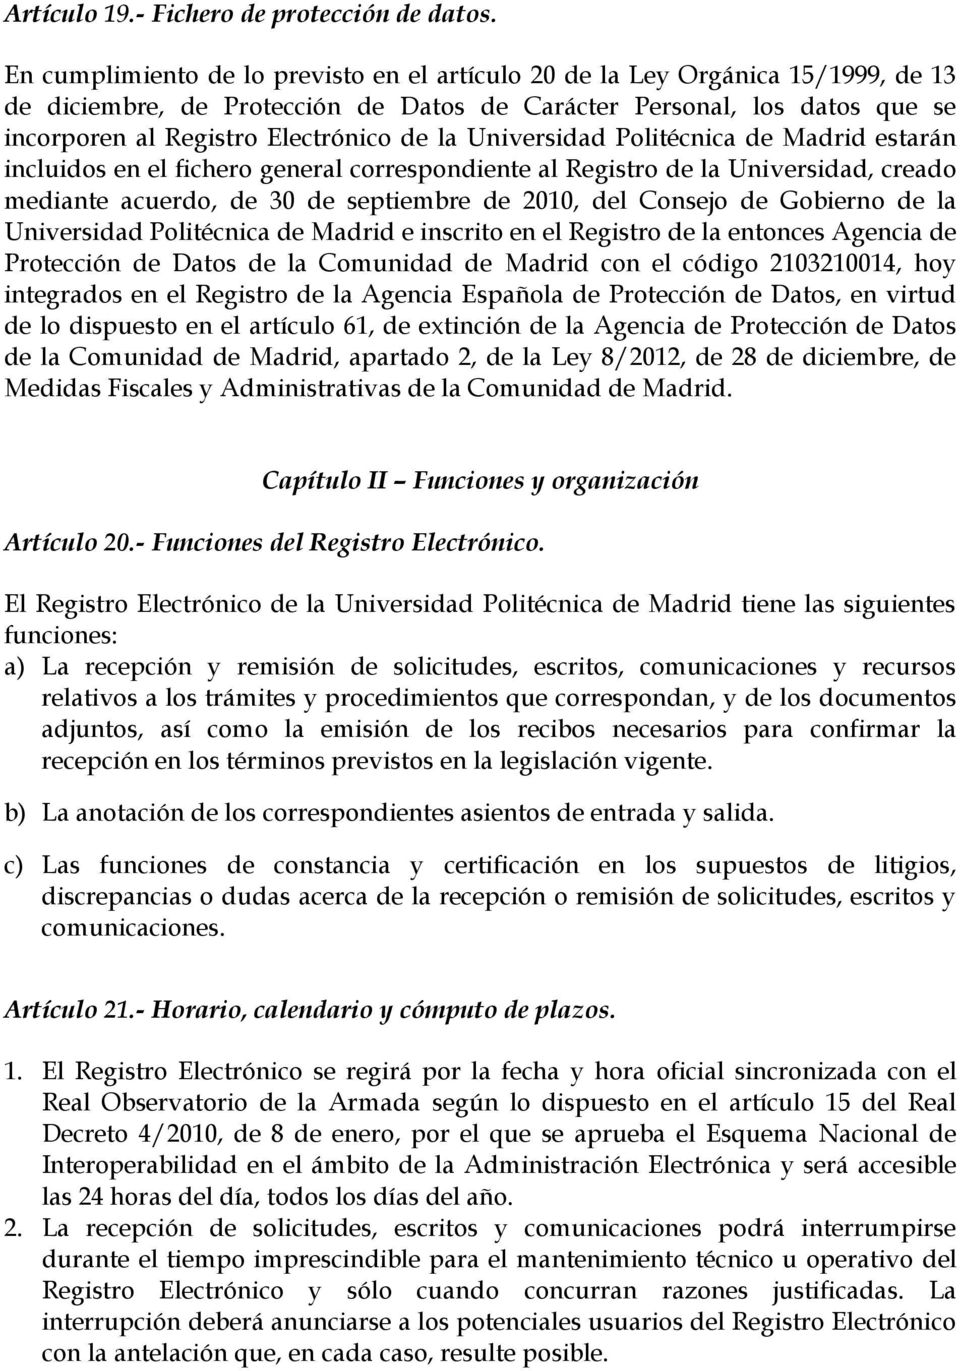 Universidad Politécnica de Madrid estarán incluidos en el fichero general correspondiente al Registro de la Universidad, creado mediante acuerdo, de 30 de septiembre de 2010, del Consejo de Gobierno